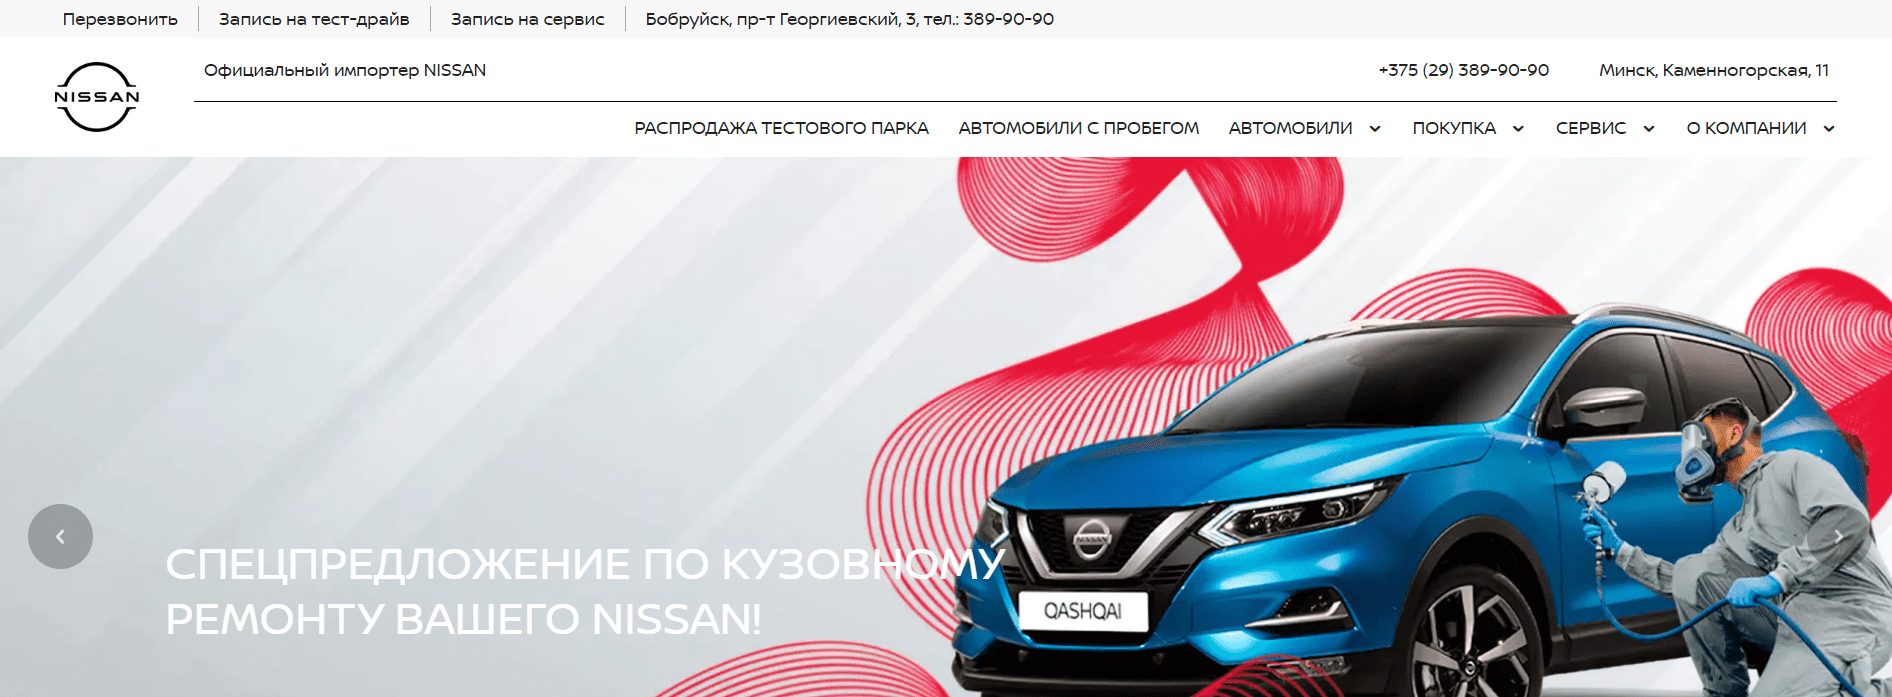 Официальный автодилер Nissan (nissan-global.by) - официальный сайт